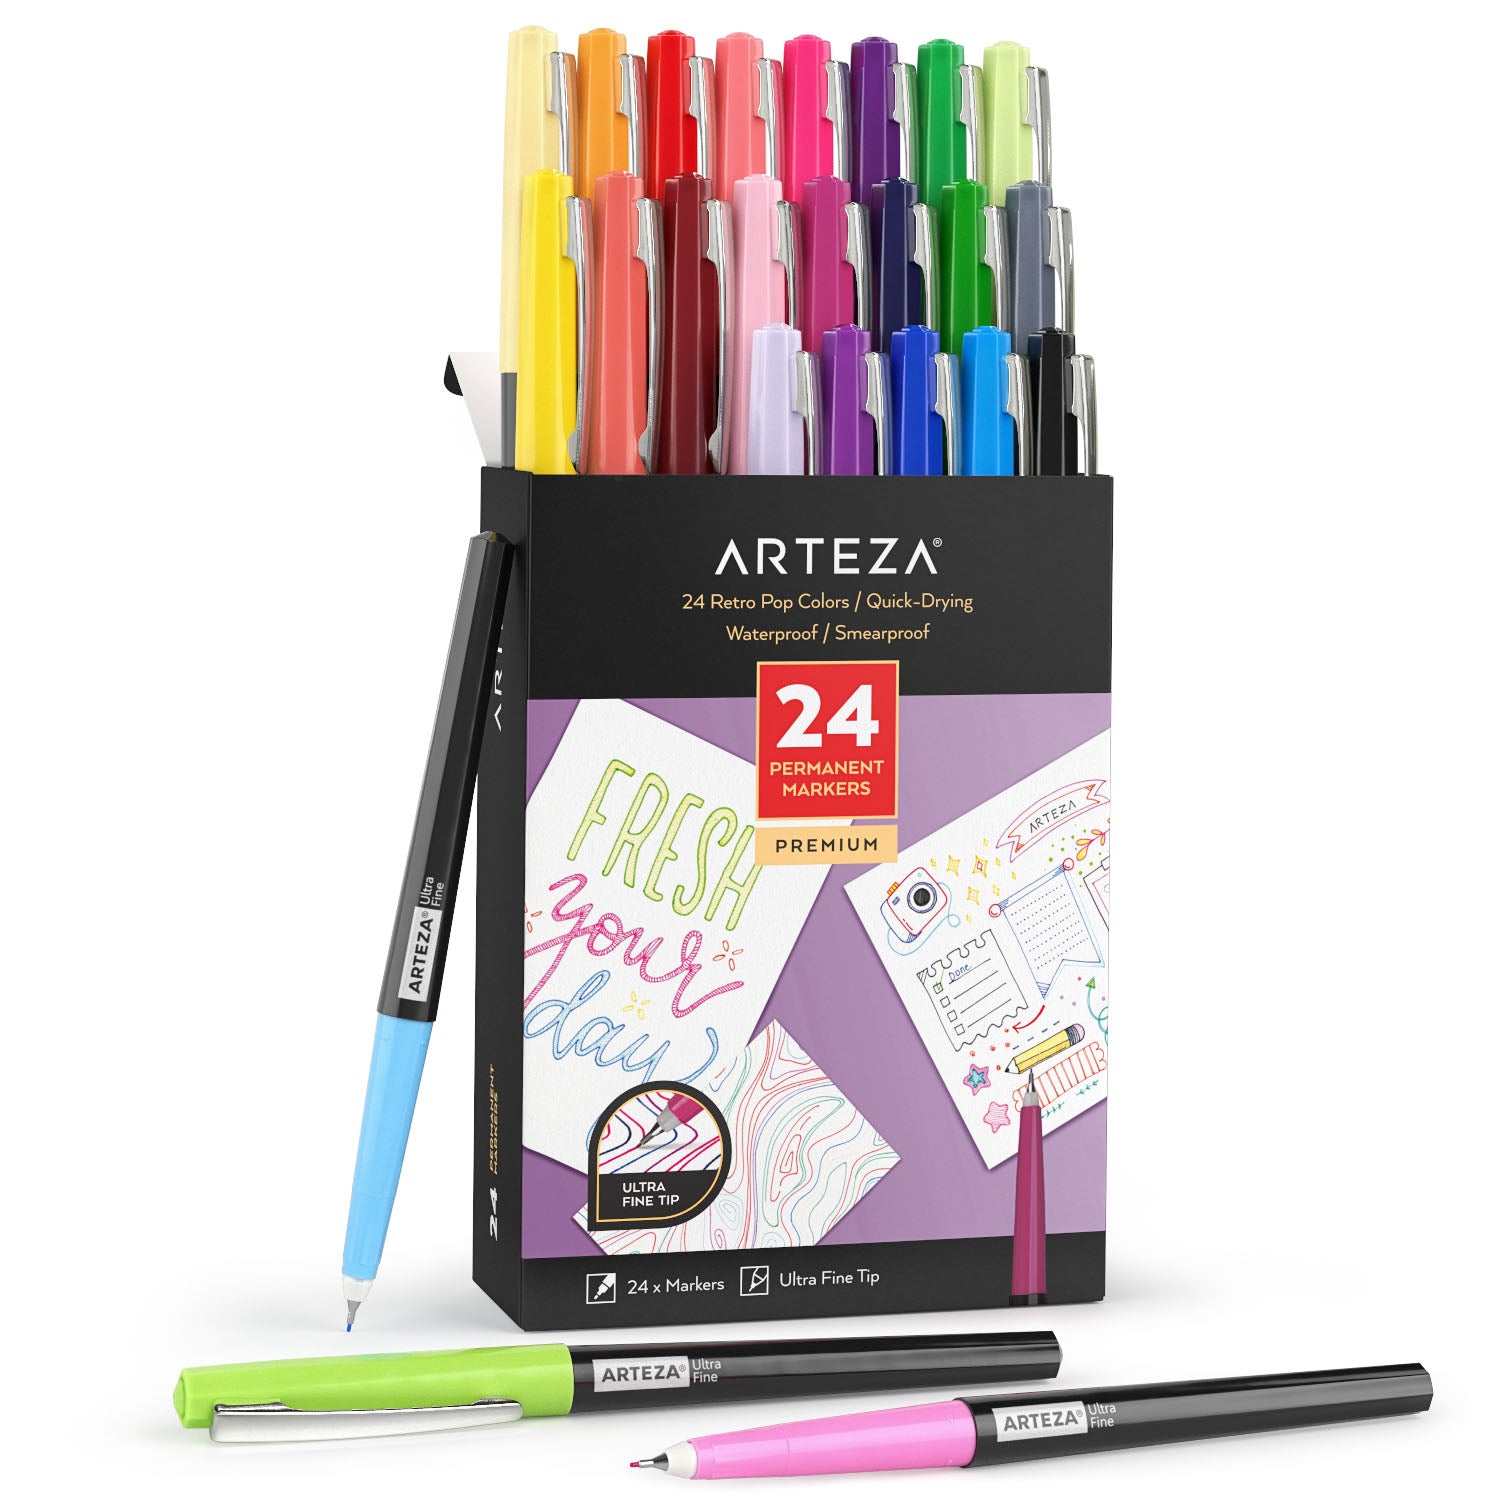 https://arteza.com/cdn/shop/products/permanent-markers-retro-pop-colors-ultra-fine-nib-set-of-24_kG1eyeZk.jpg?v=1652894371&width=1500